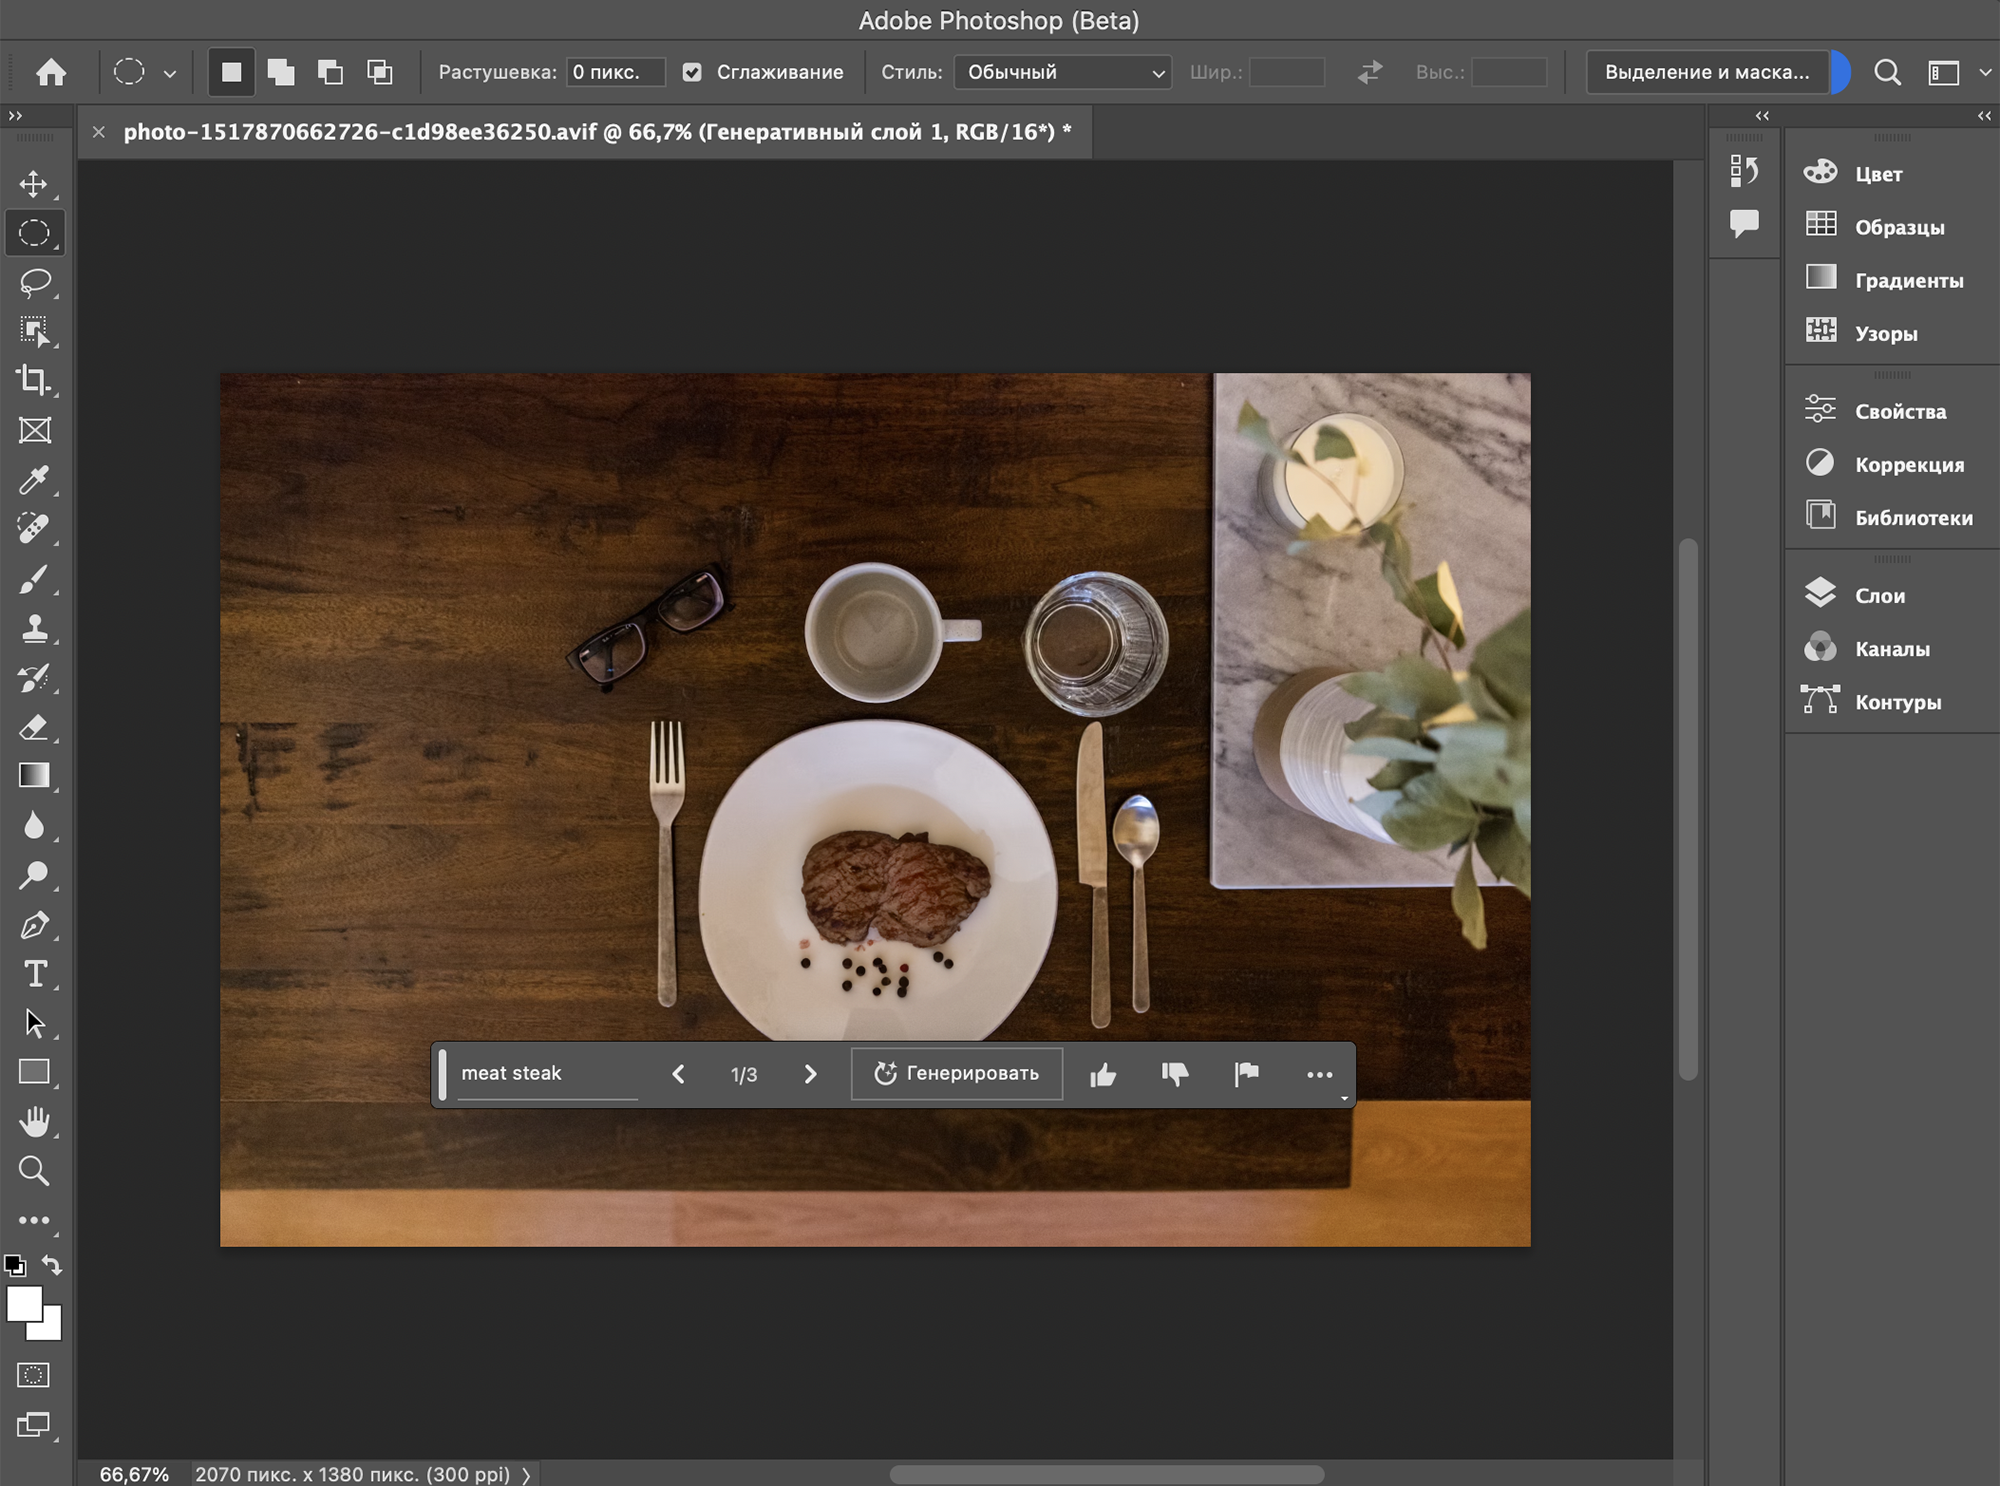 Как работать со слоями в Adobe Photoshop - пошаговая инструкция